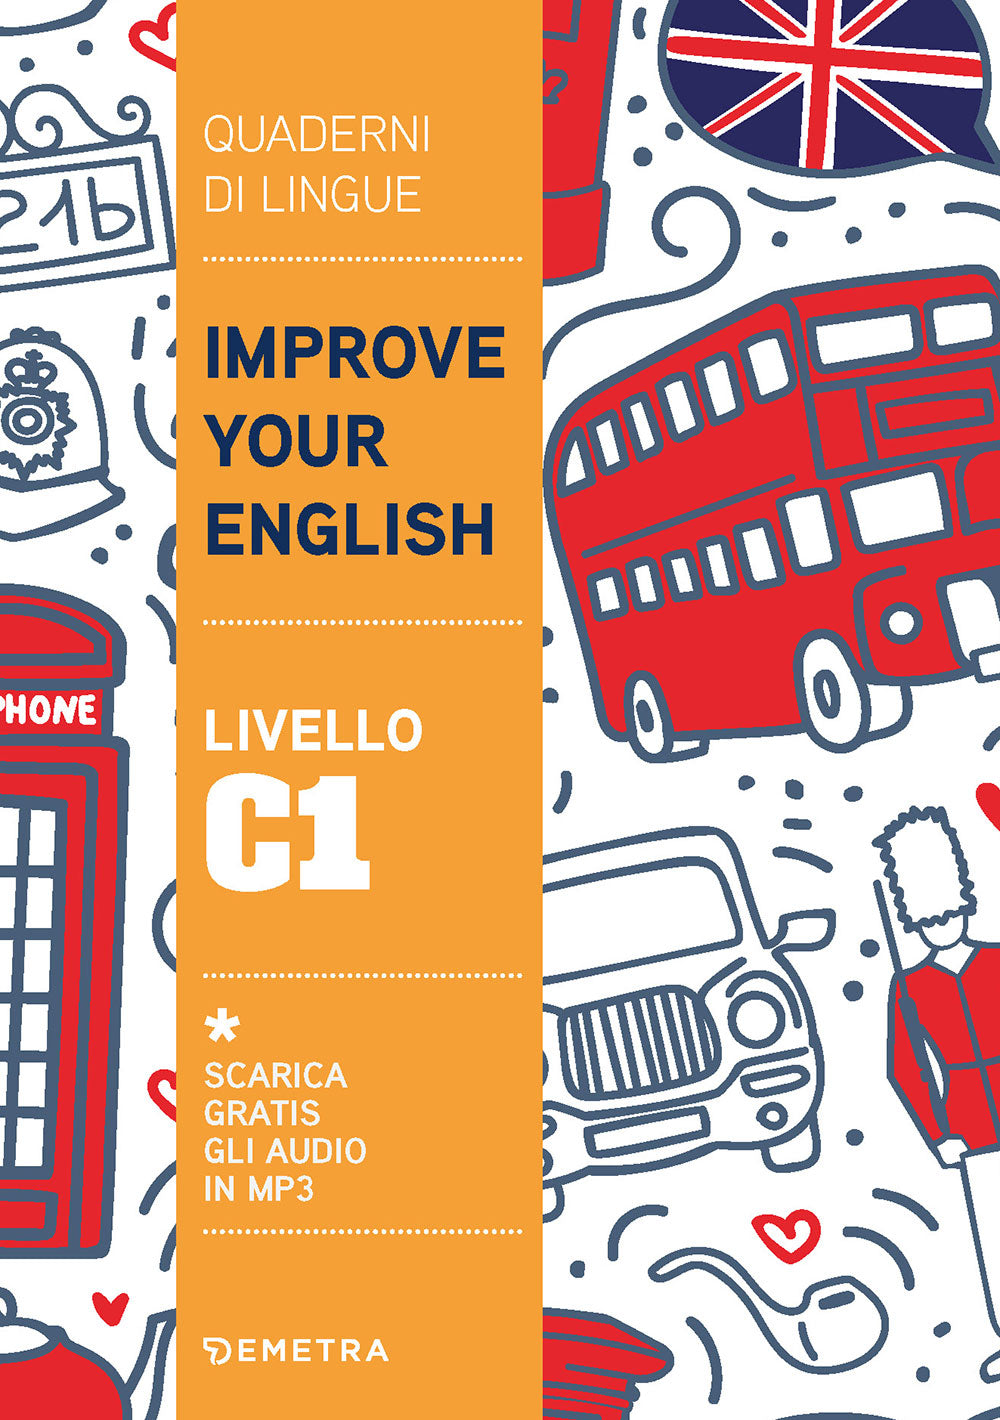 Improve Your English livello C1. Scarica gratis gli audio in MP3